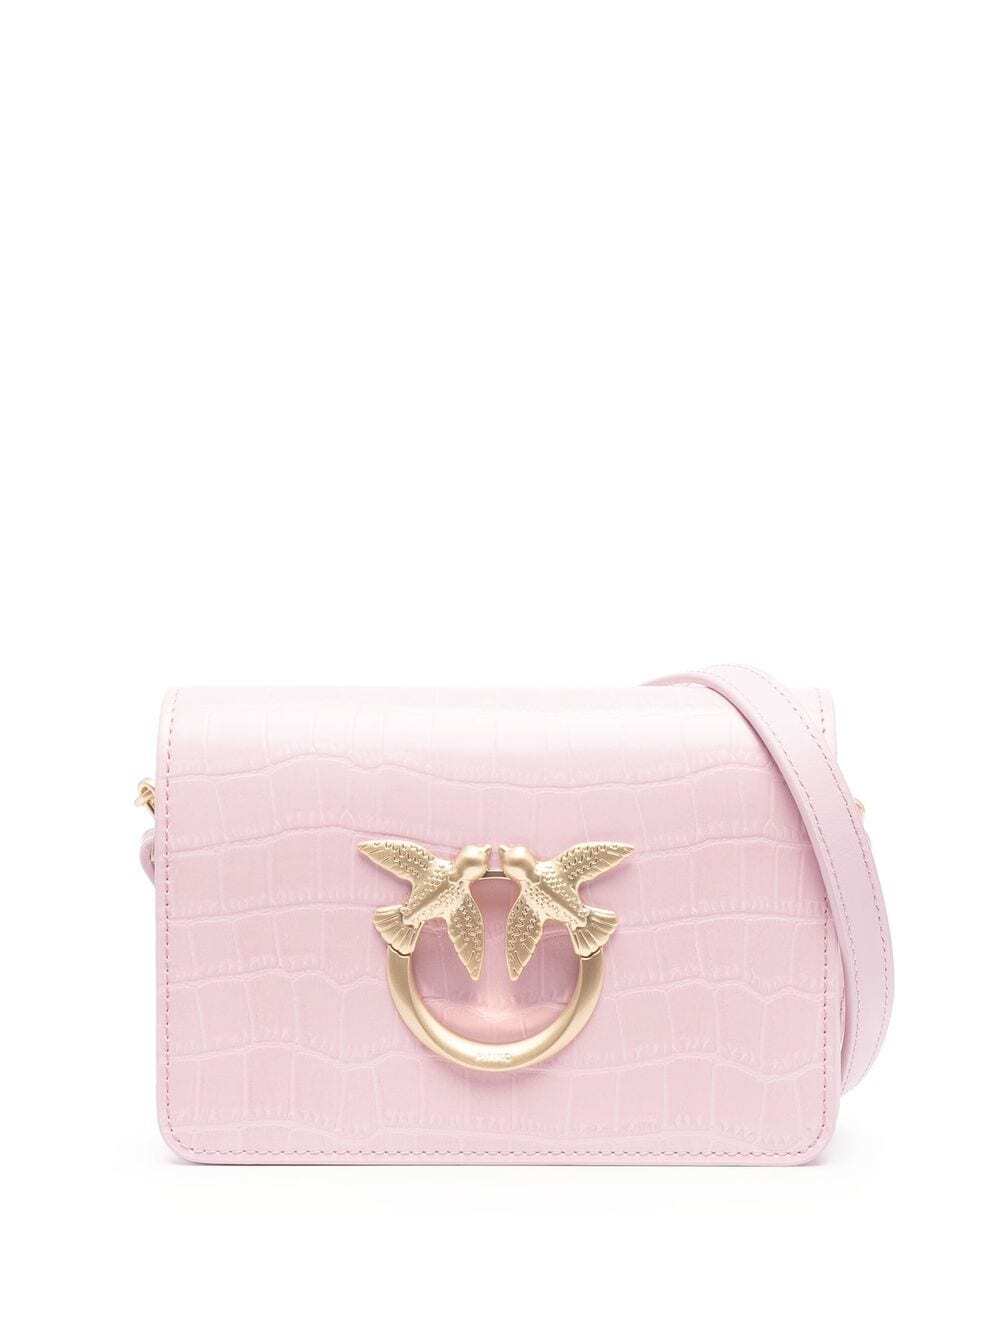 PINKO mini Love crossbody bag in pink